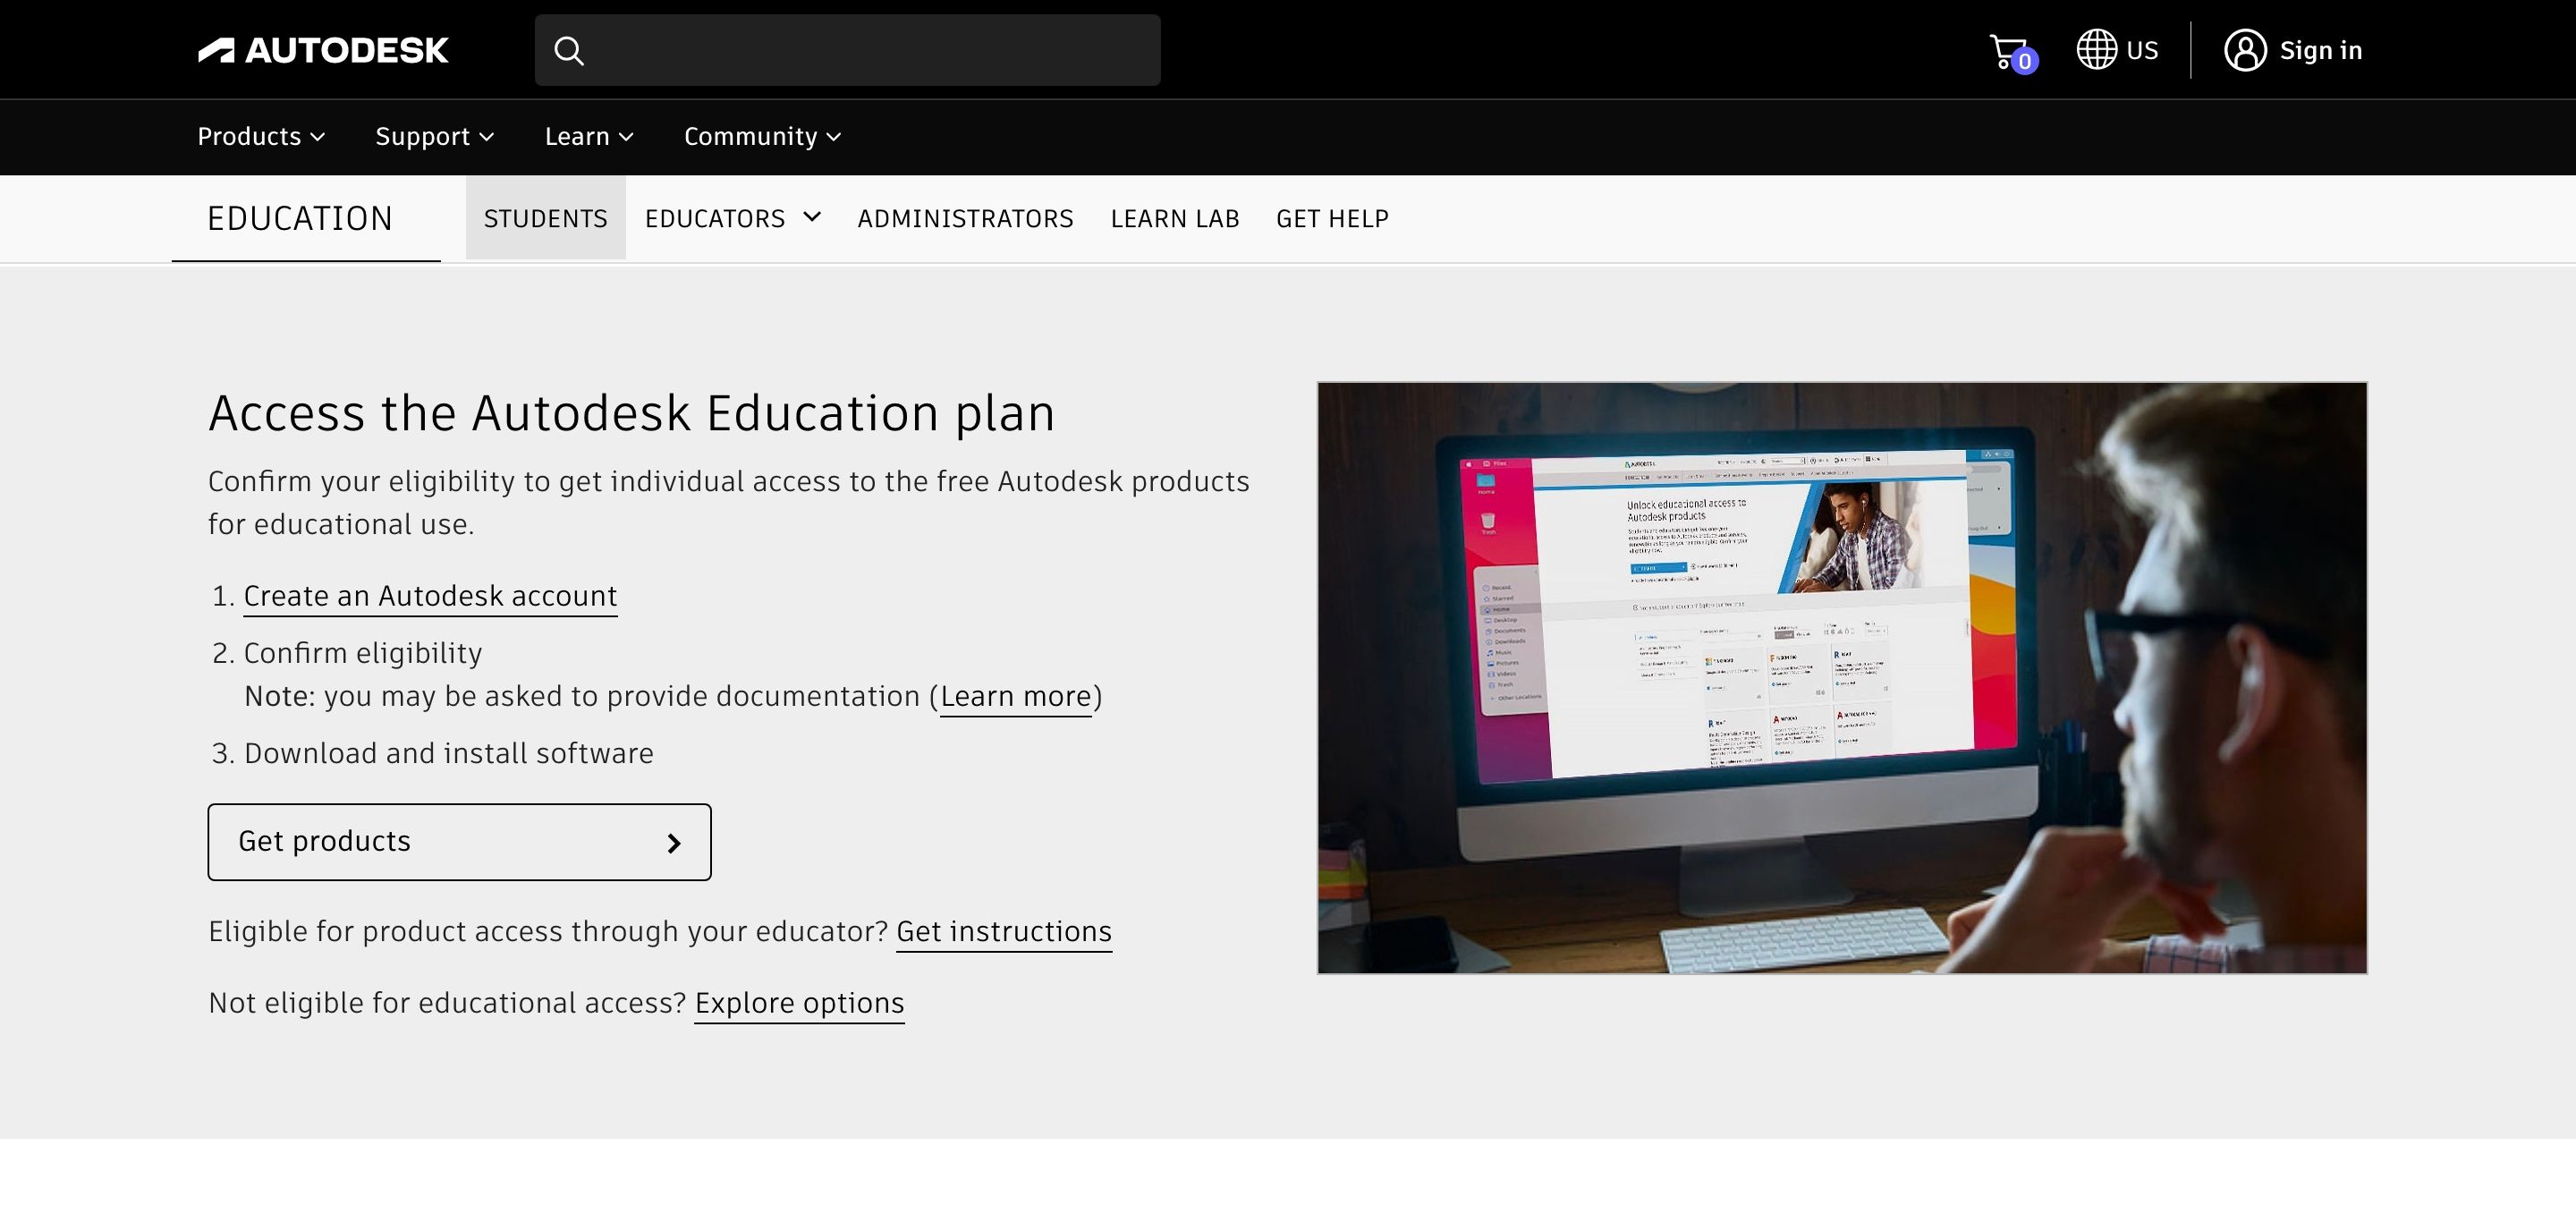 Autodesk website showing education plans